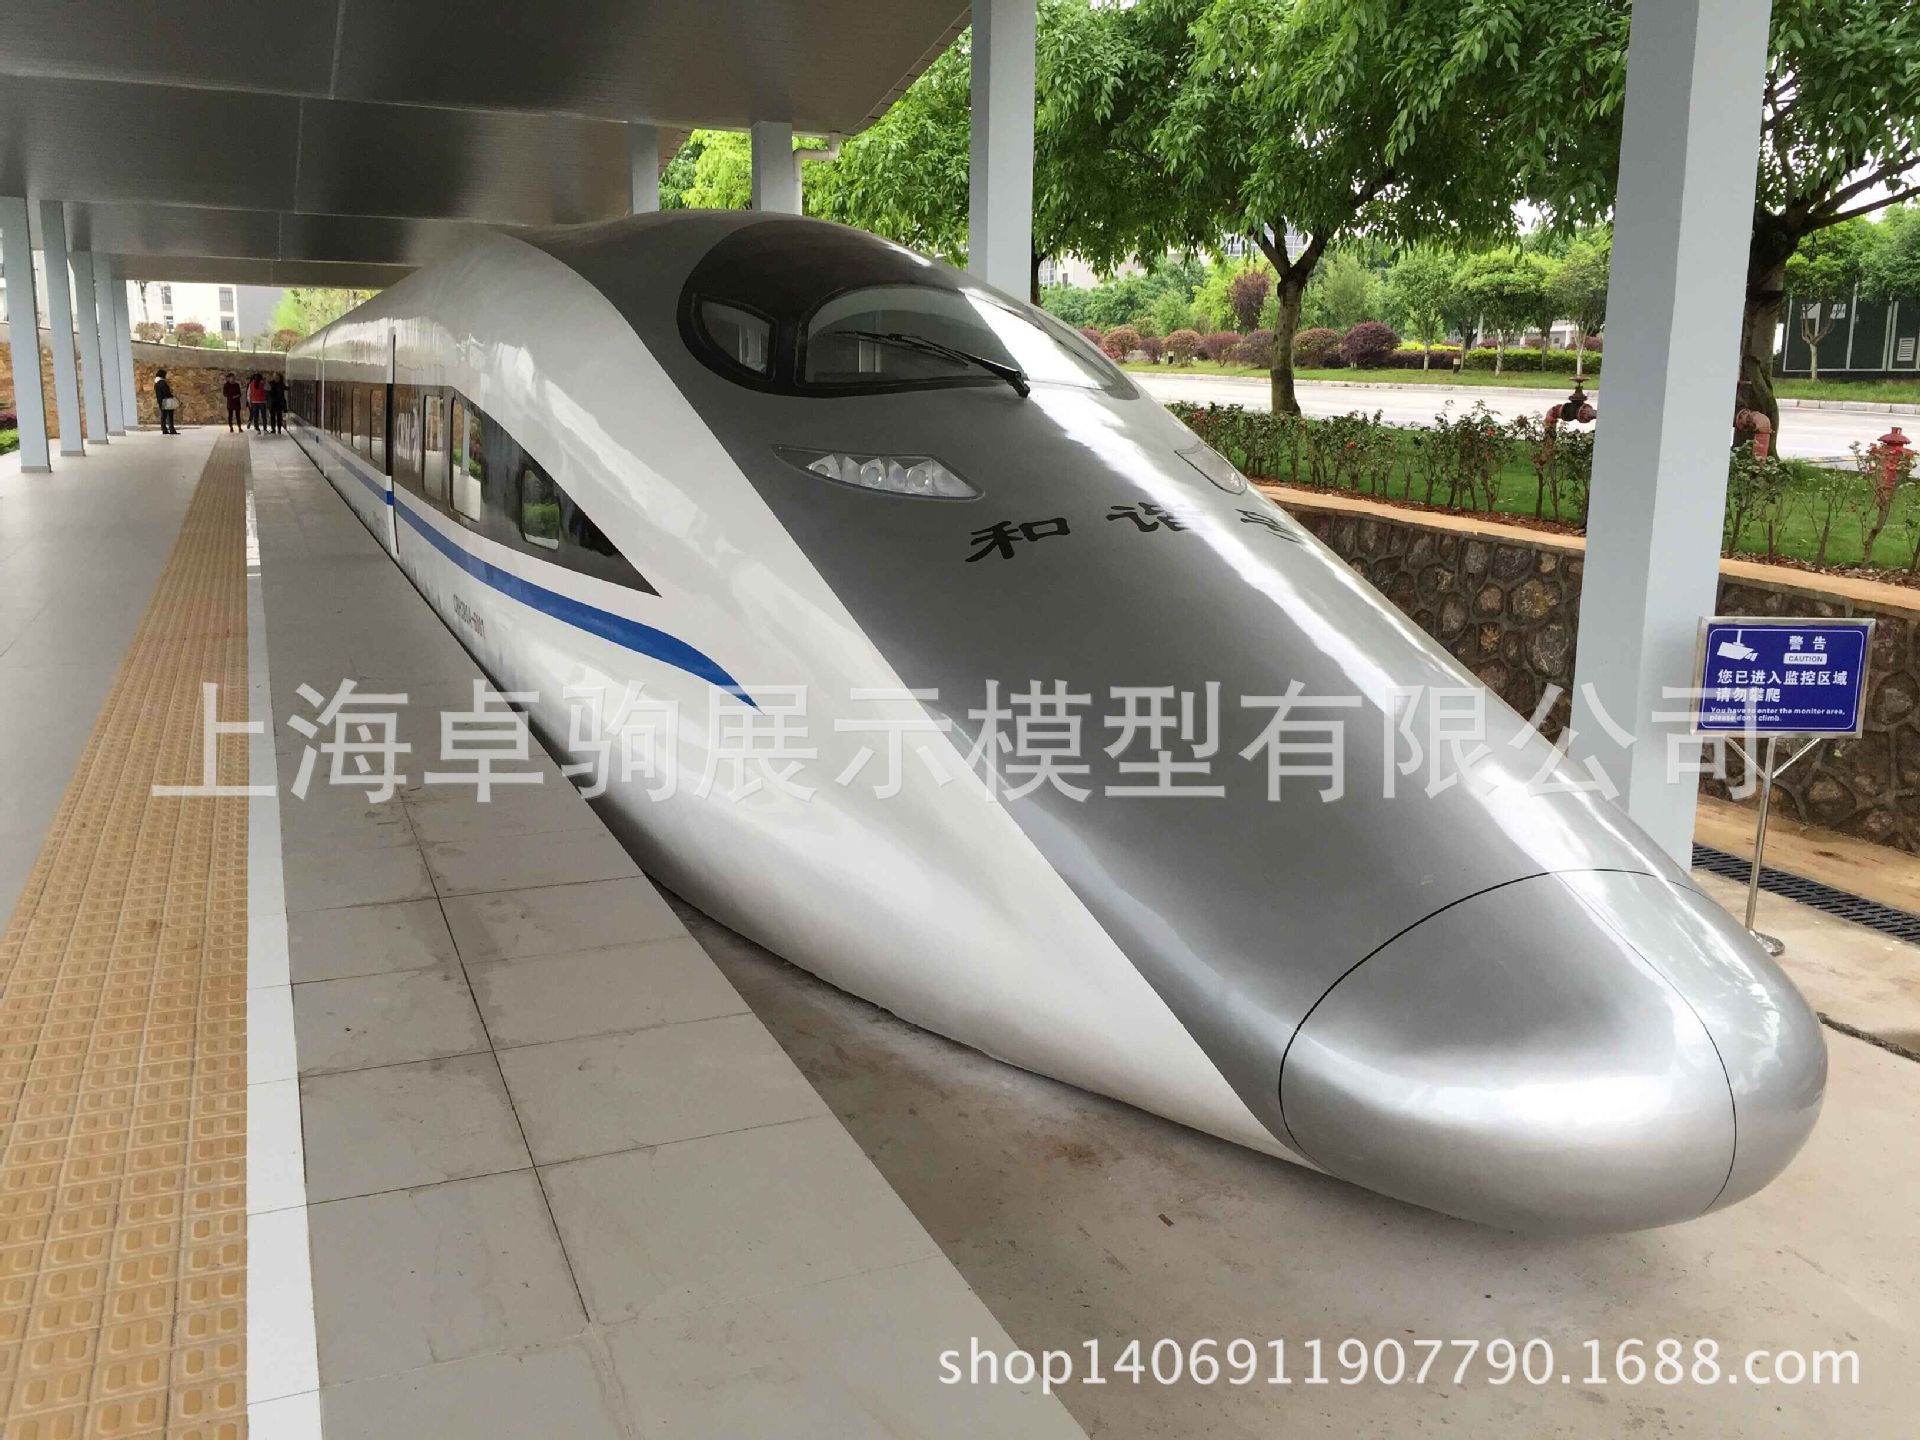 大型模拟舱动车高铁教学实训设备上海卓驹展示模型专业加工定制示例图3